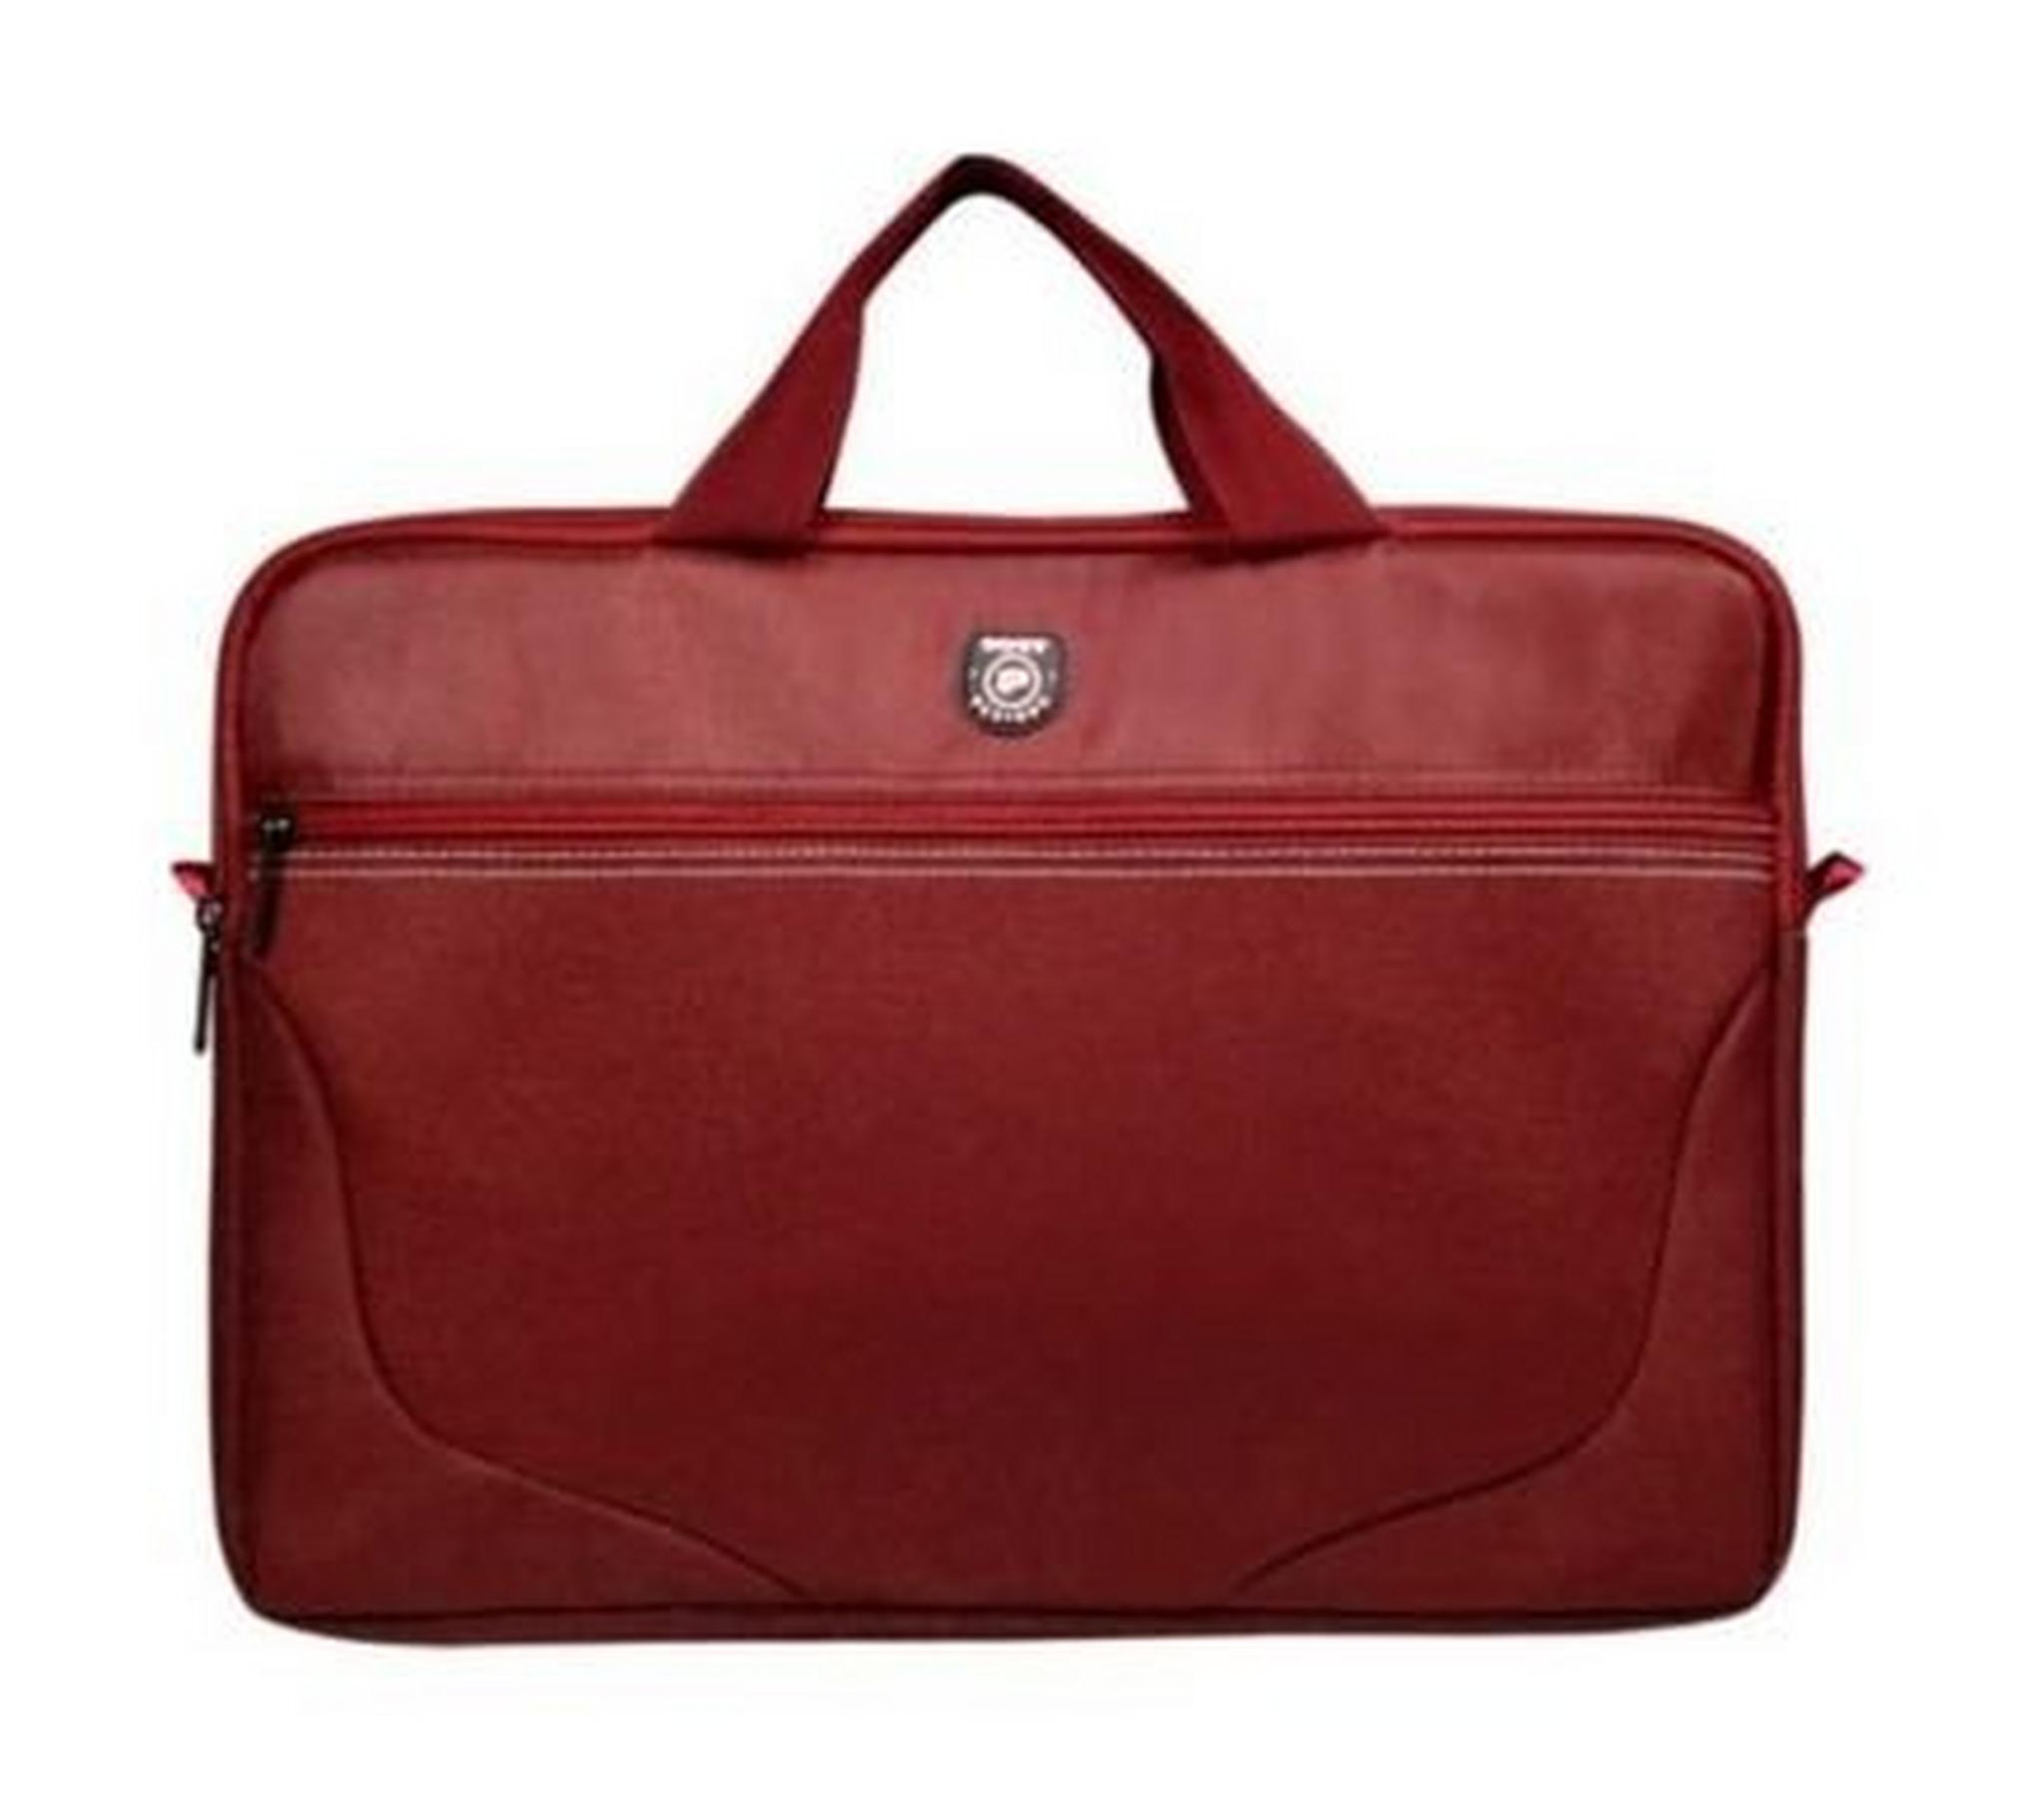 حقيبة اللابتوب بورت بولاريس مقاس 15 بوصة مع ماوس - أحمر